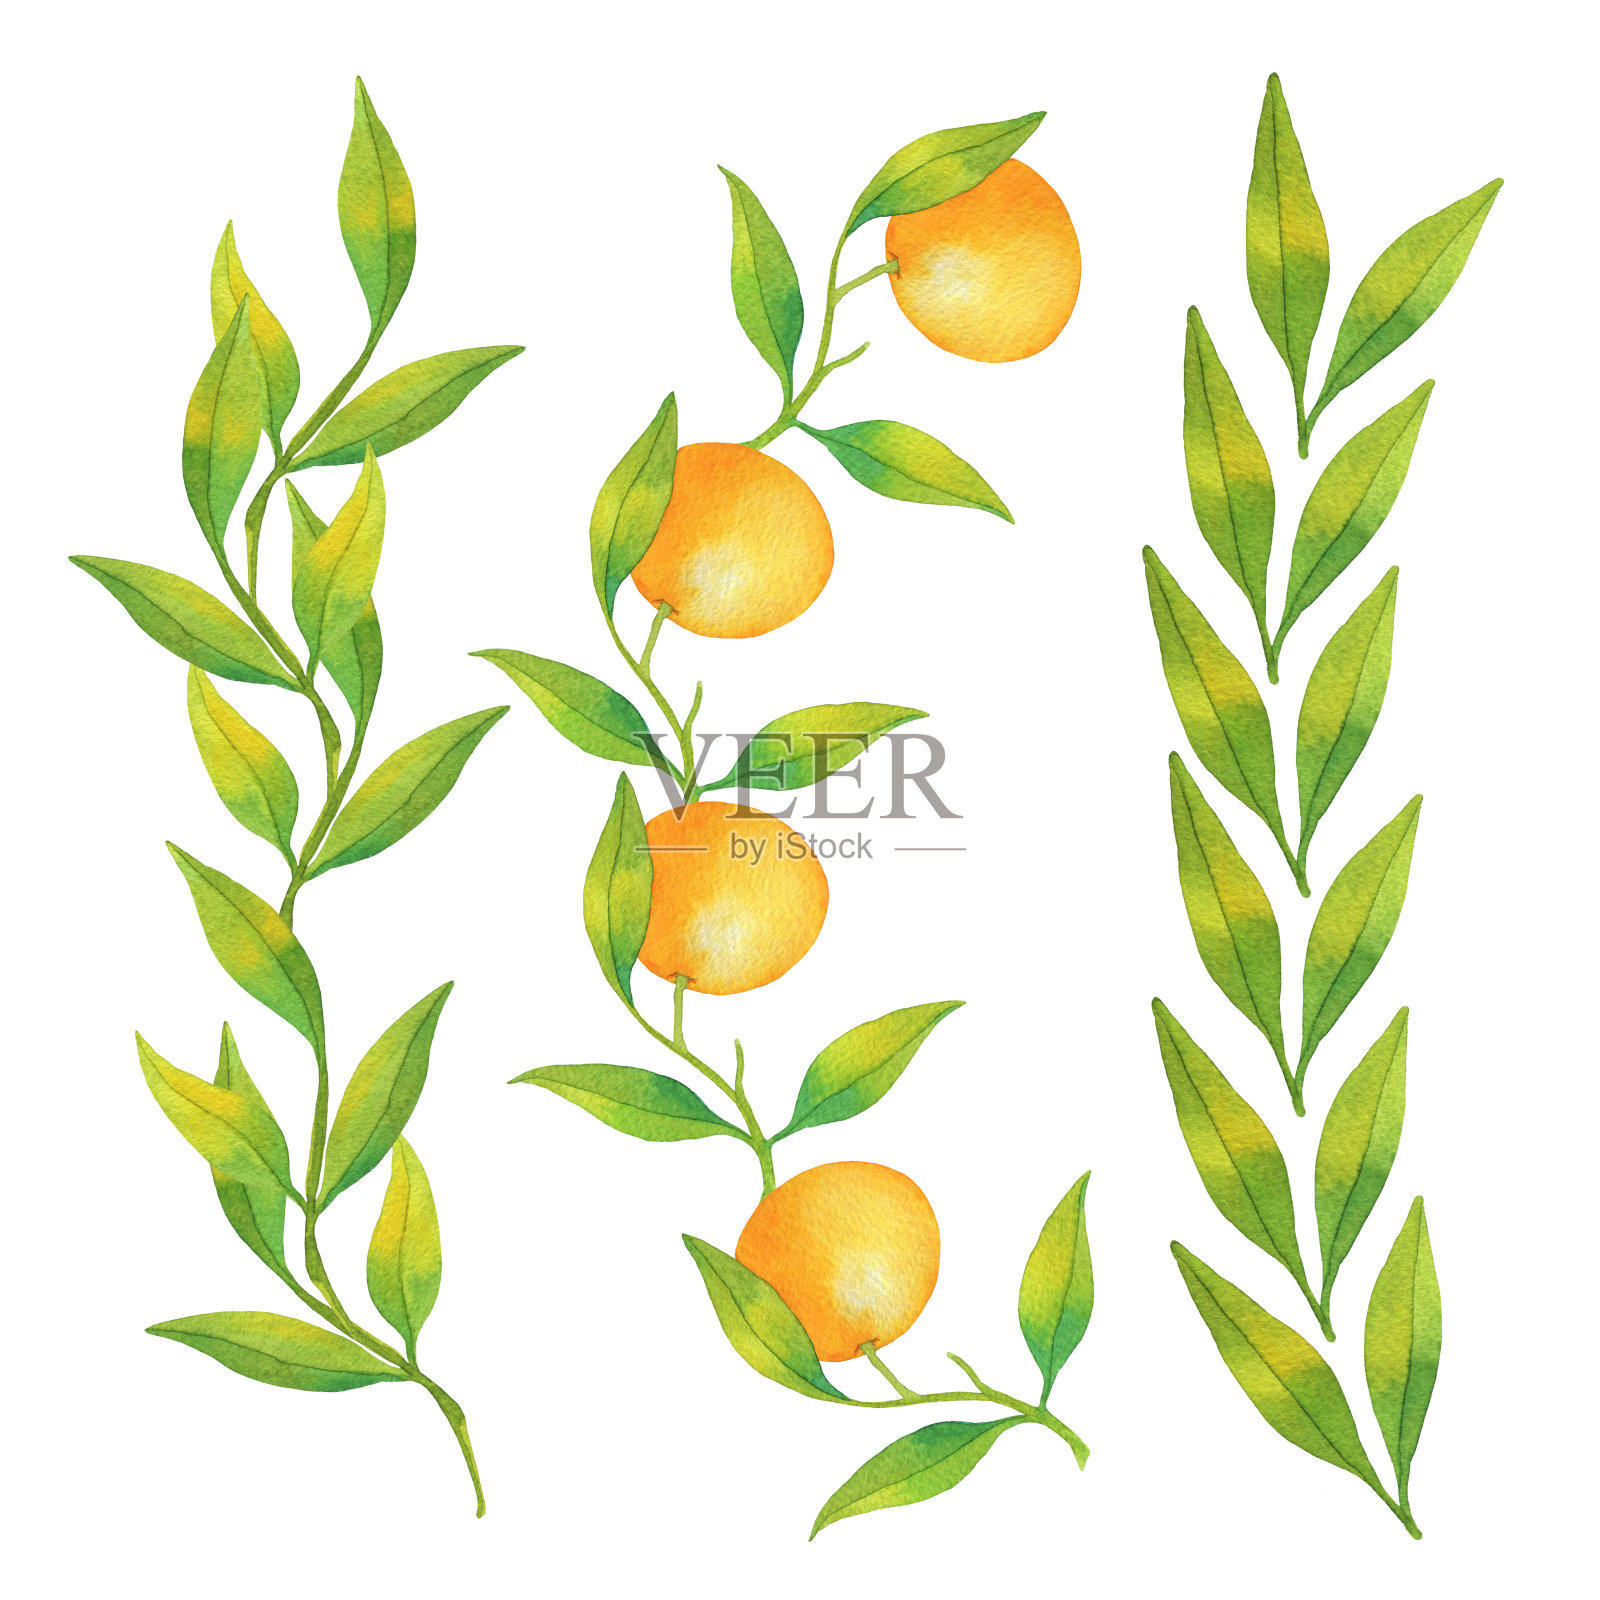 水彩边框元素制作的手绘橘子和绿叶插画图片素材